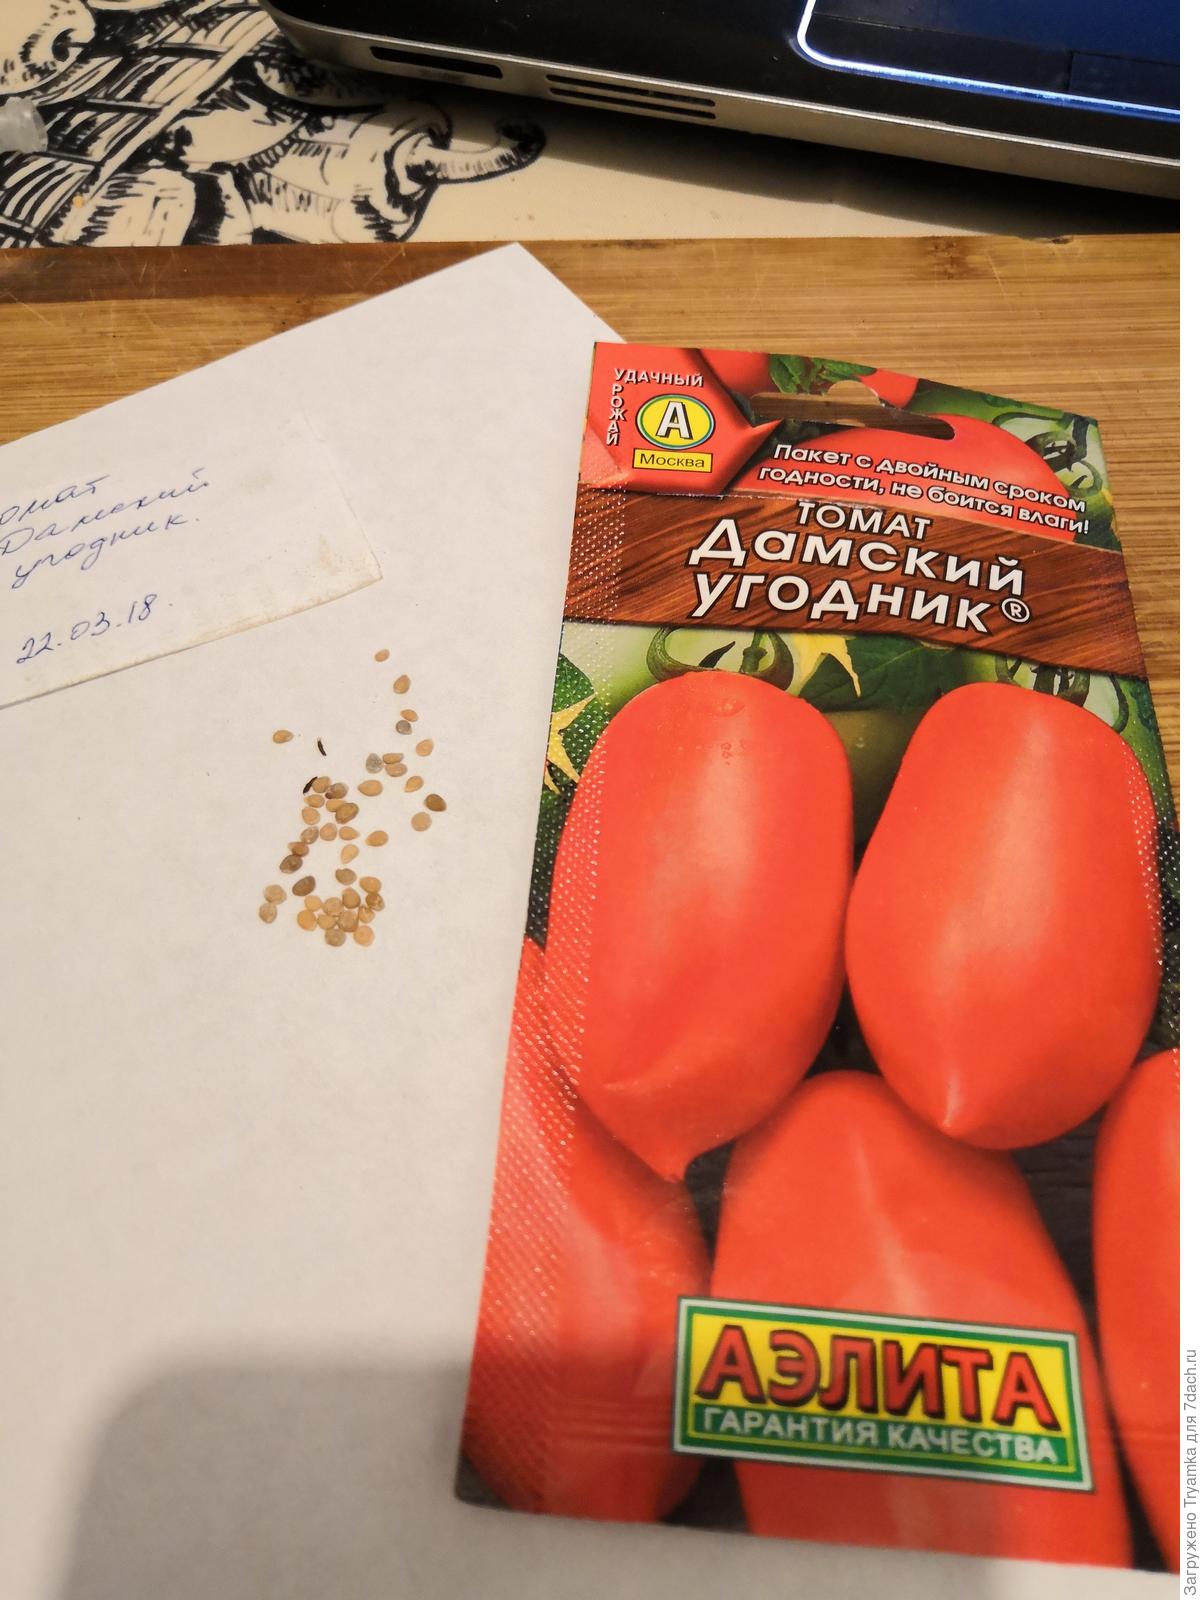 Сорта томатов упаковки